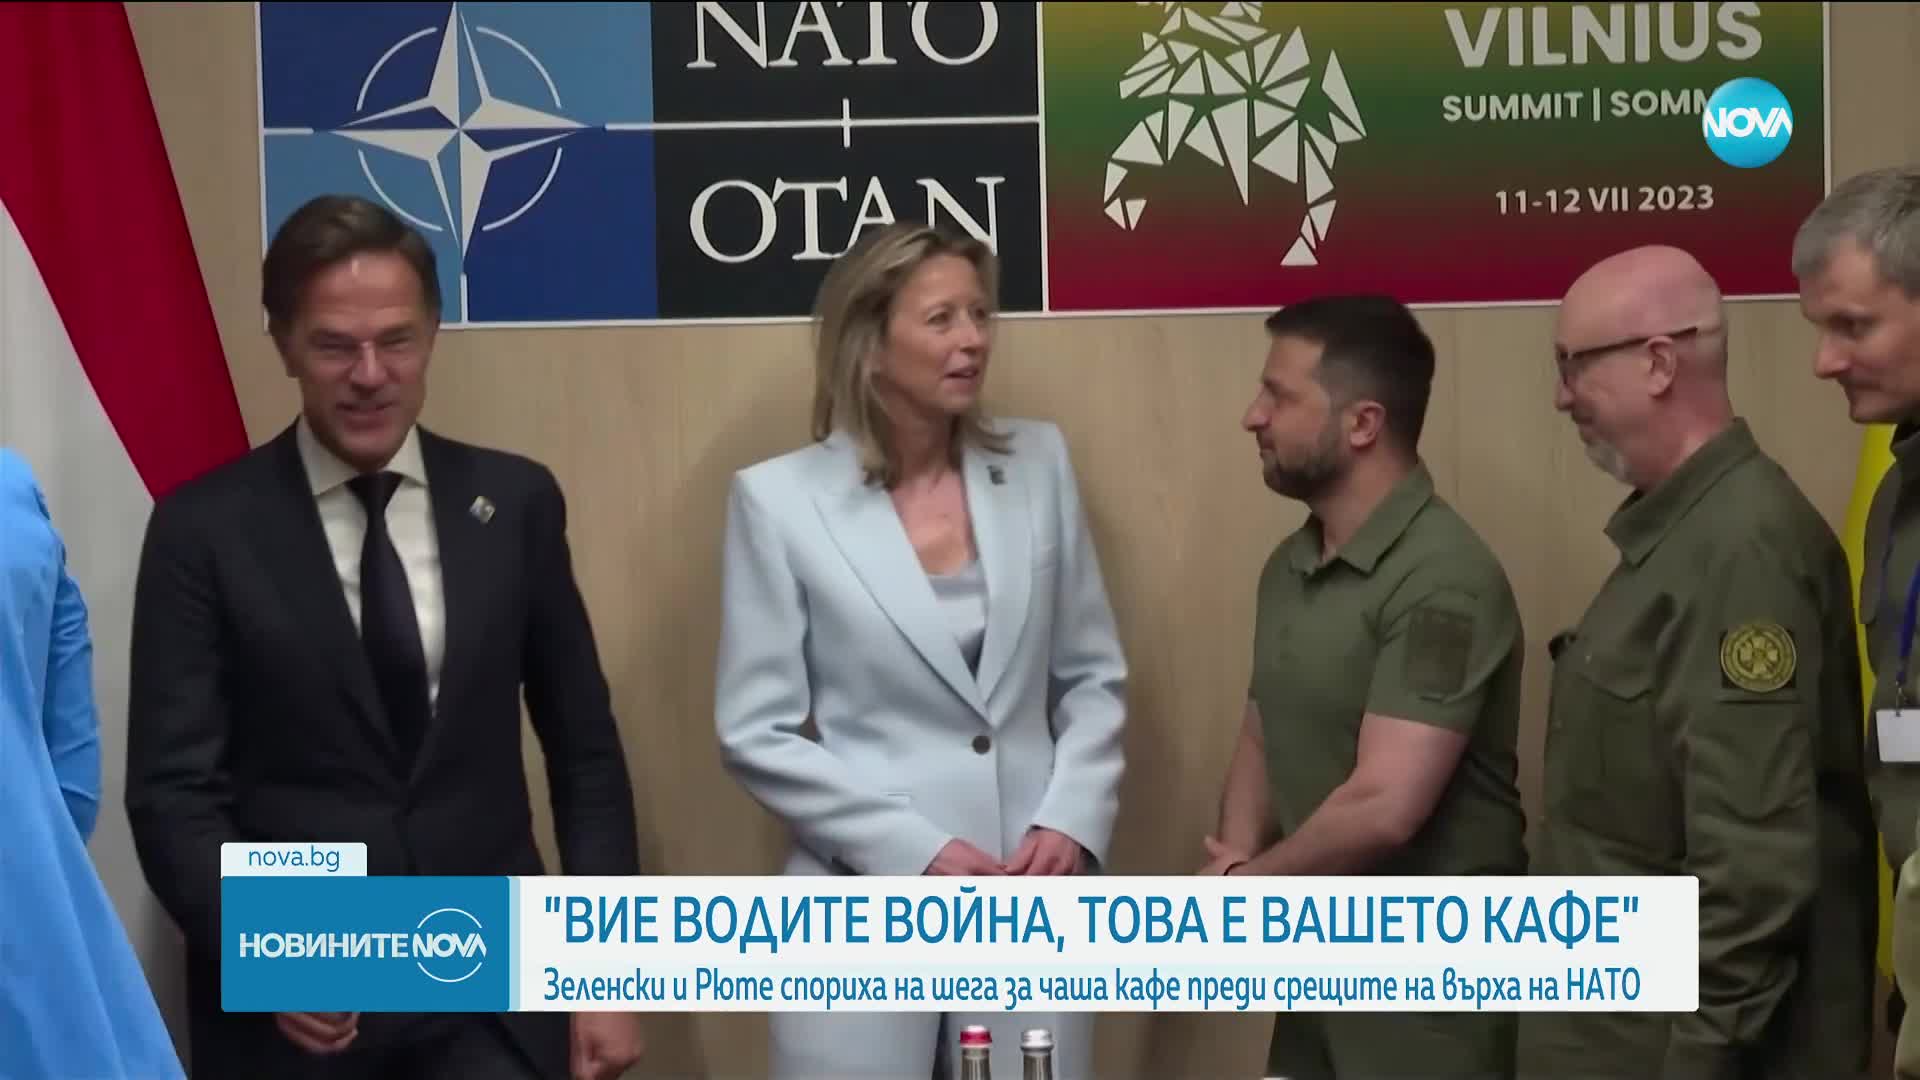 Зеленски и Рюте спориха на шега за чаша кафе преди срещите на върха на НАТО